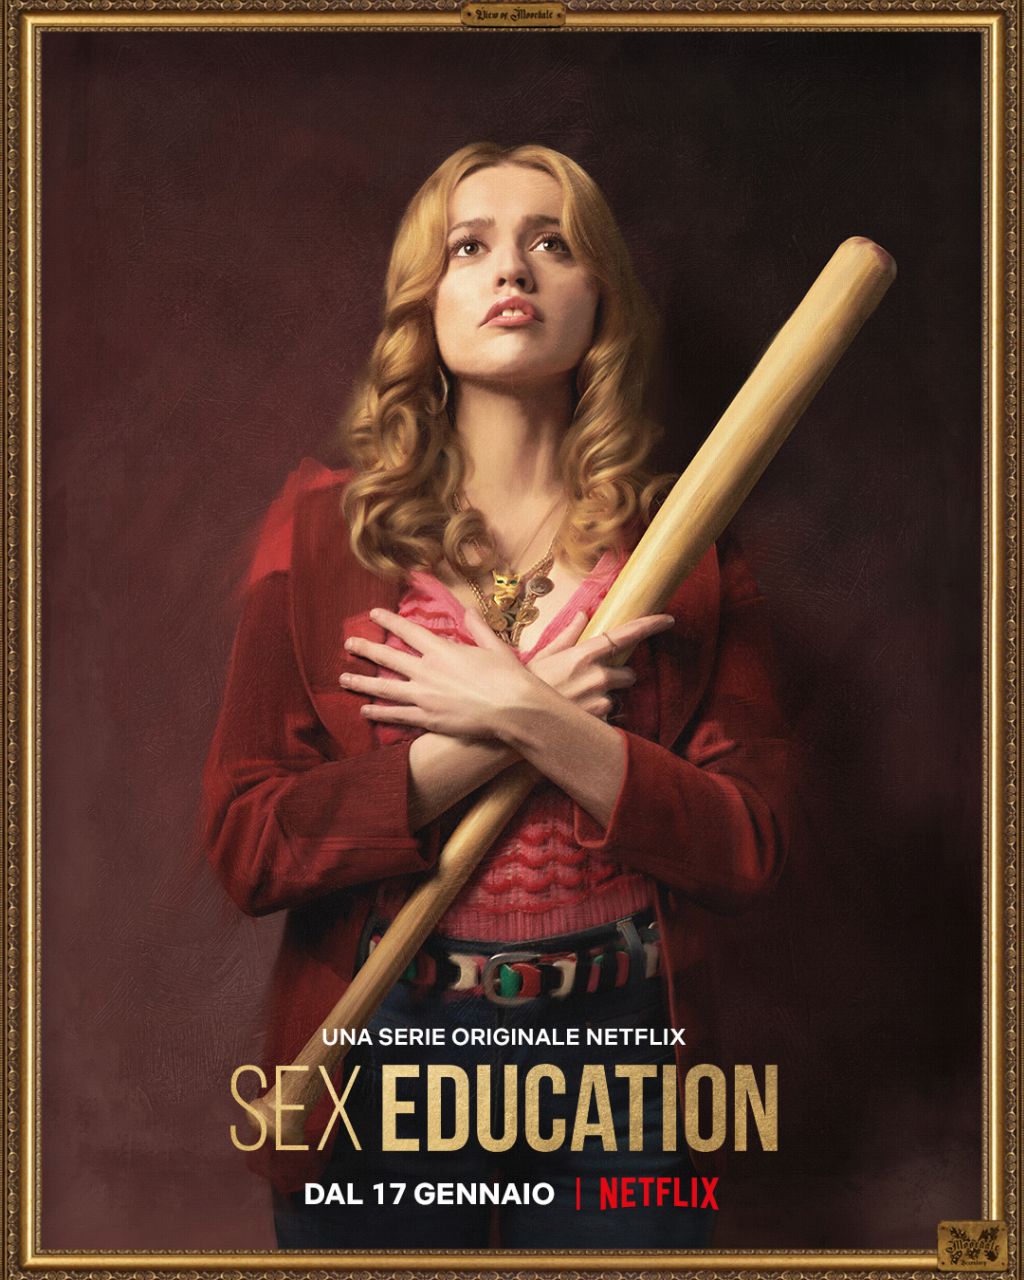 Sex Education 2 Arriva Il 17 Gennaio Su Netflix Ecco I Poster Dei Personaggi 1216